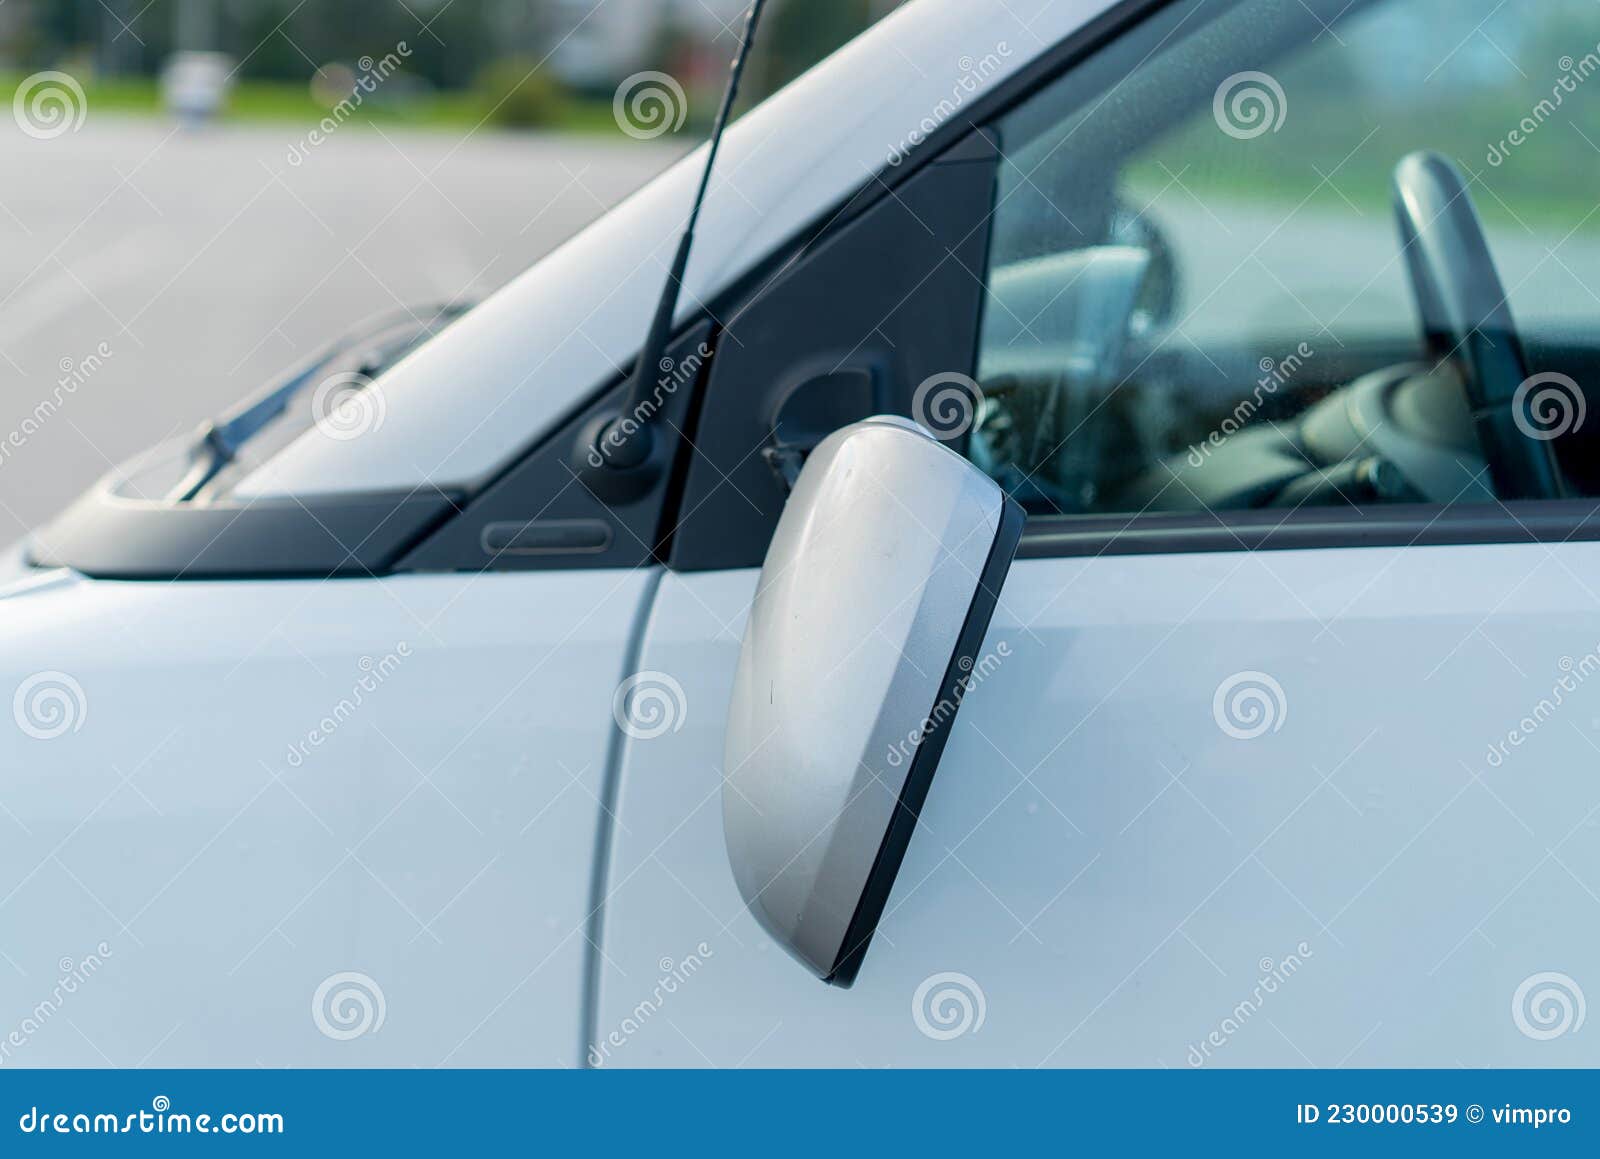 Abgebrochener Seitenspiegel am Auto. Weißes Auto Auf Der Straße Nach  Unfall. Stockbild - Bild von systemabsturz, reflexion: 230000539